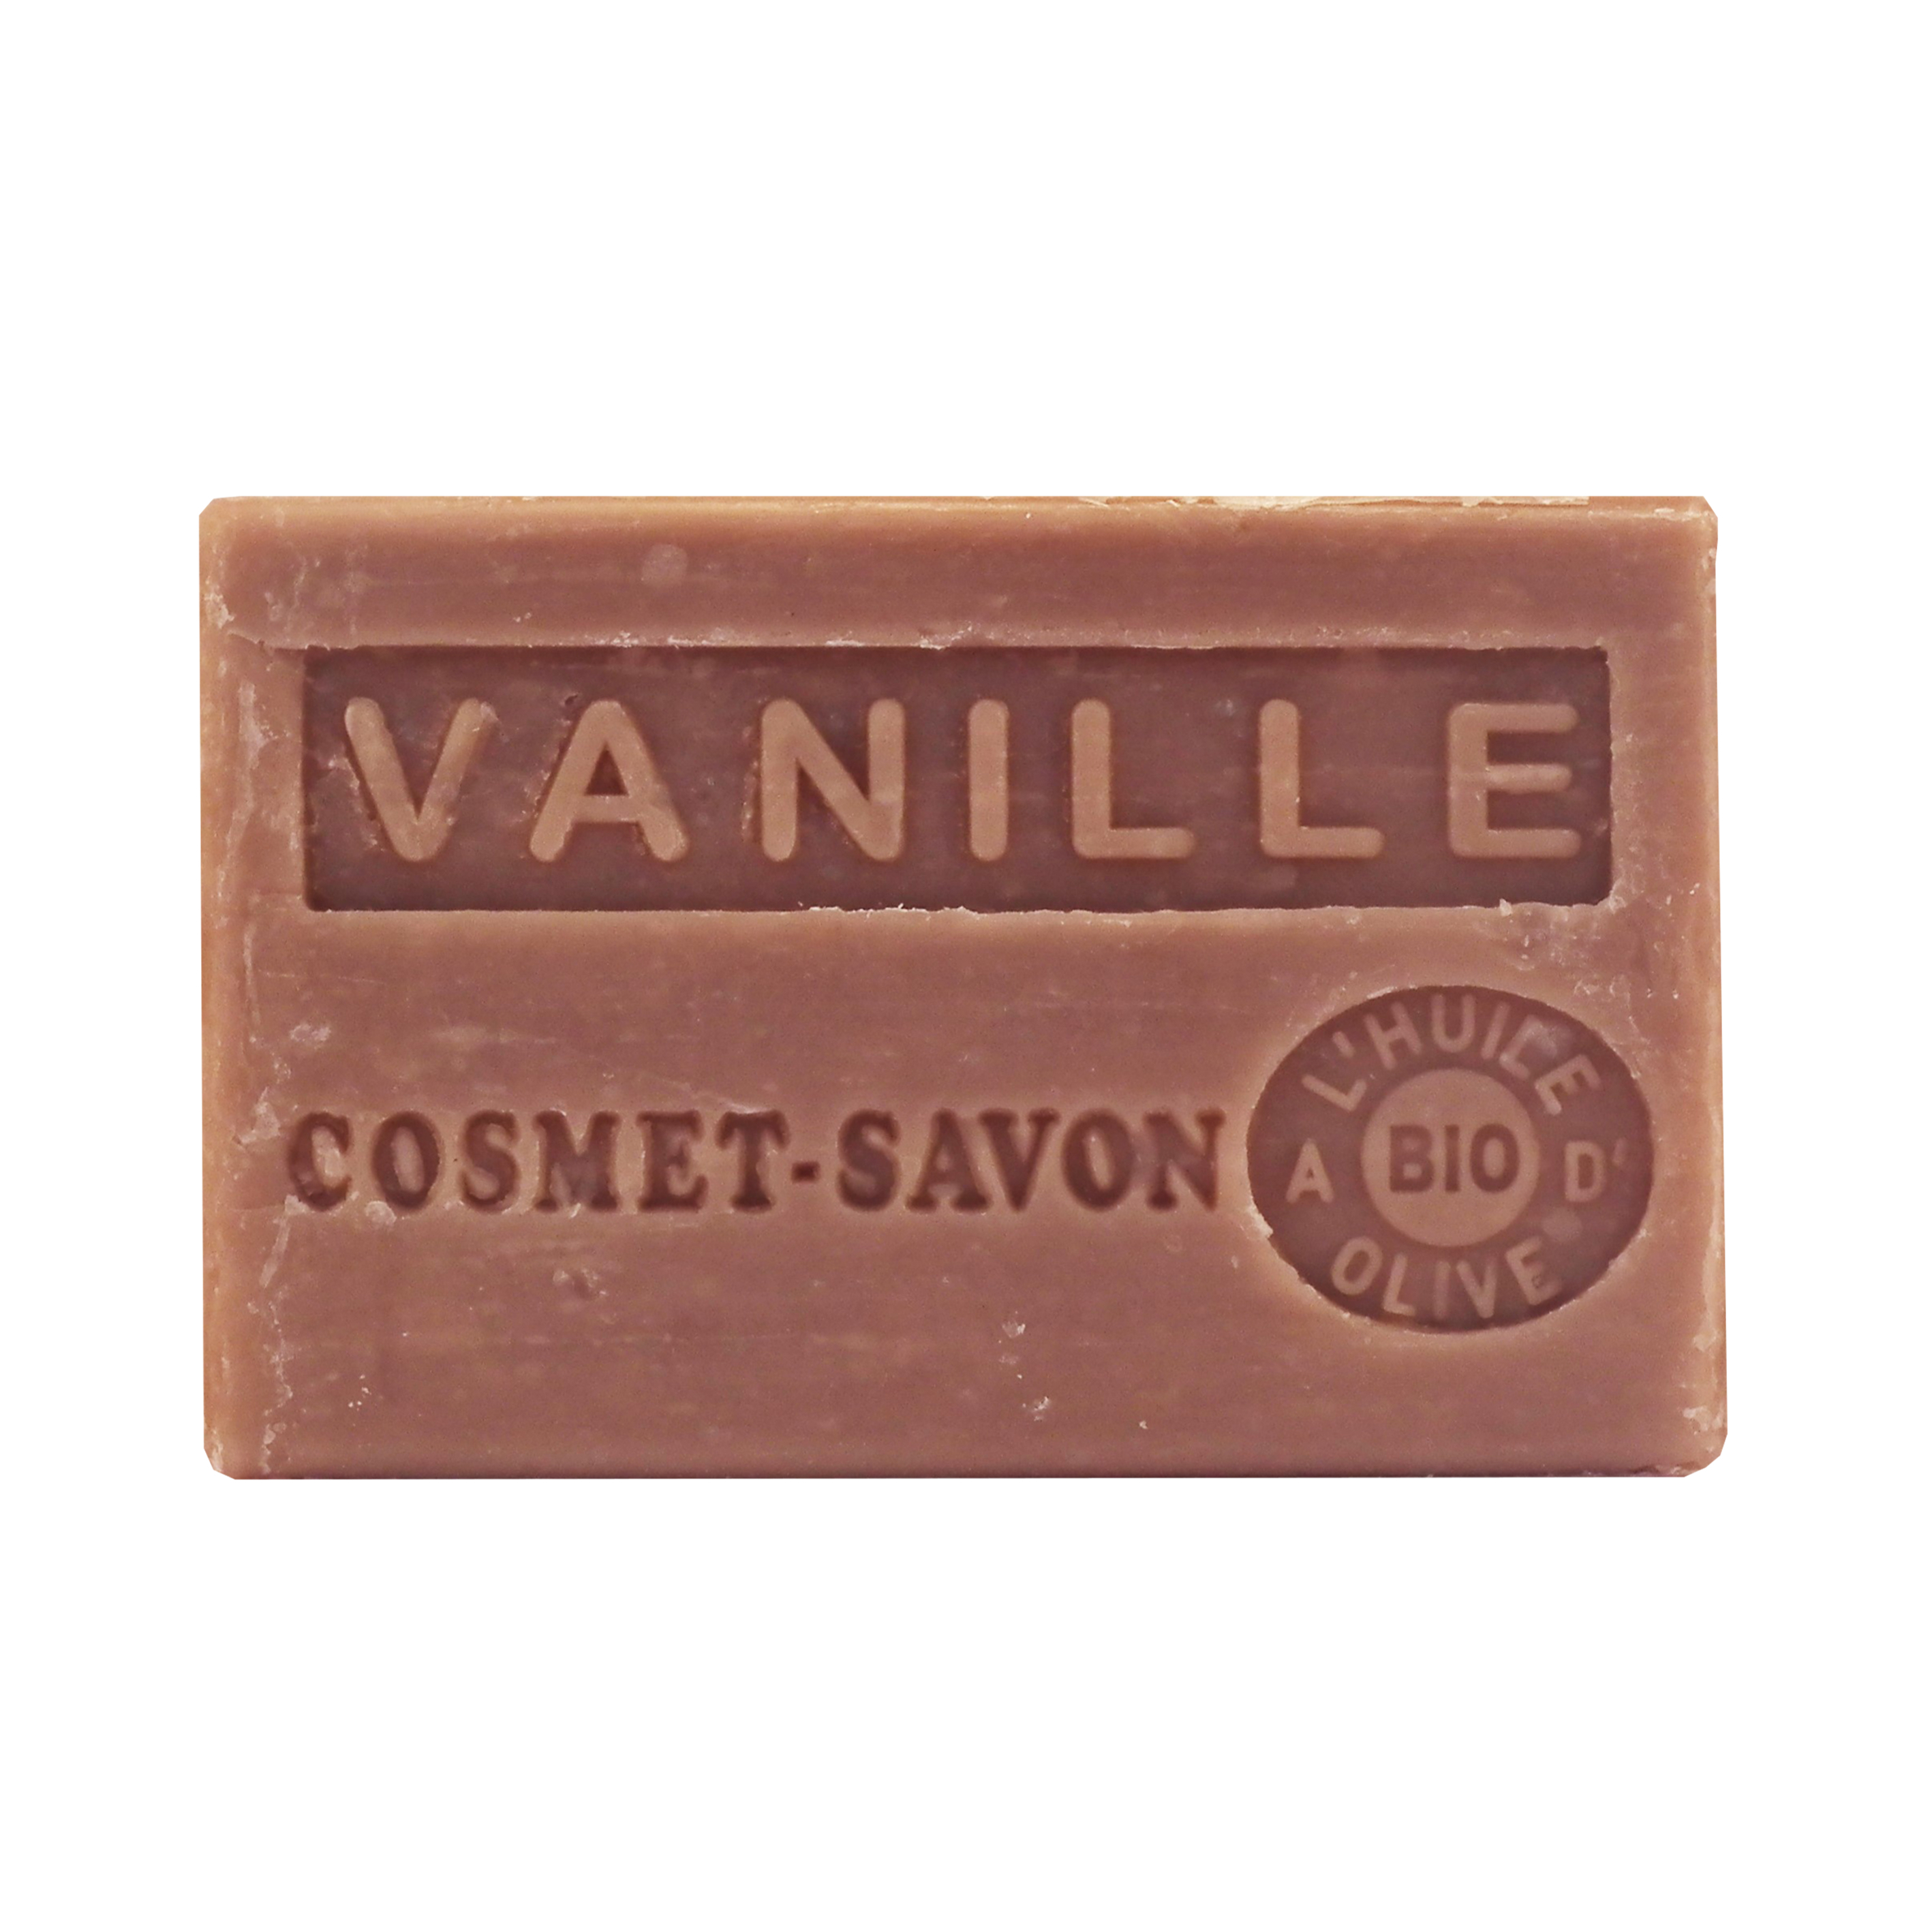 vanille-savon-125gr-au-beurre-de-karite-bio-cosmet-savon-3665205006799-face-JPEG